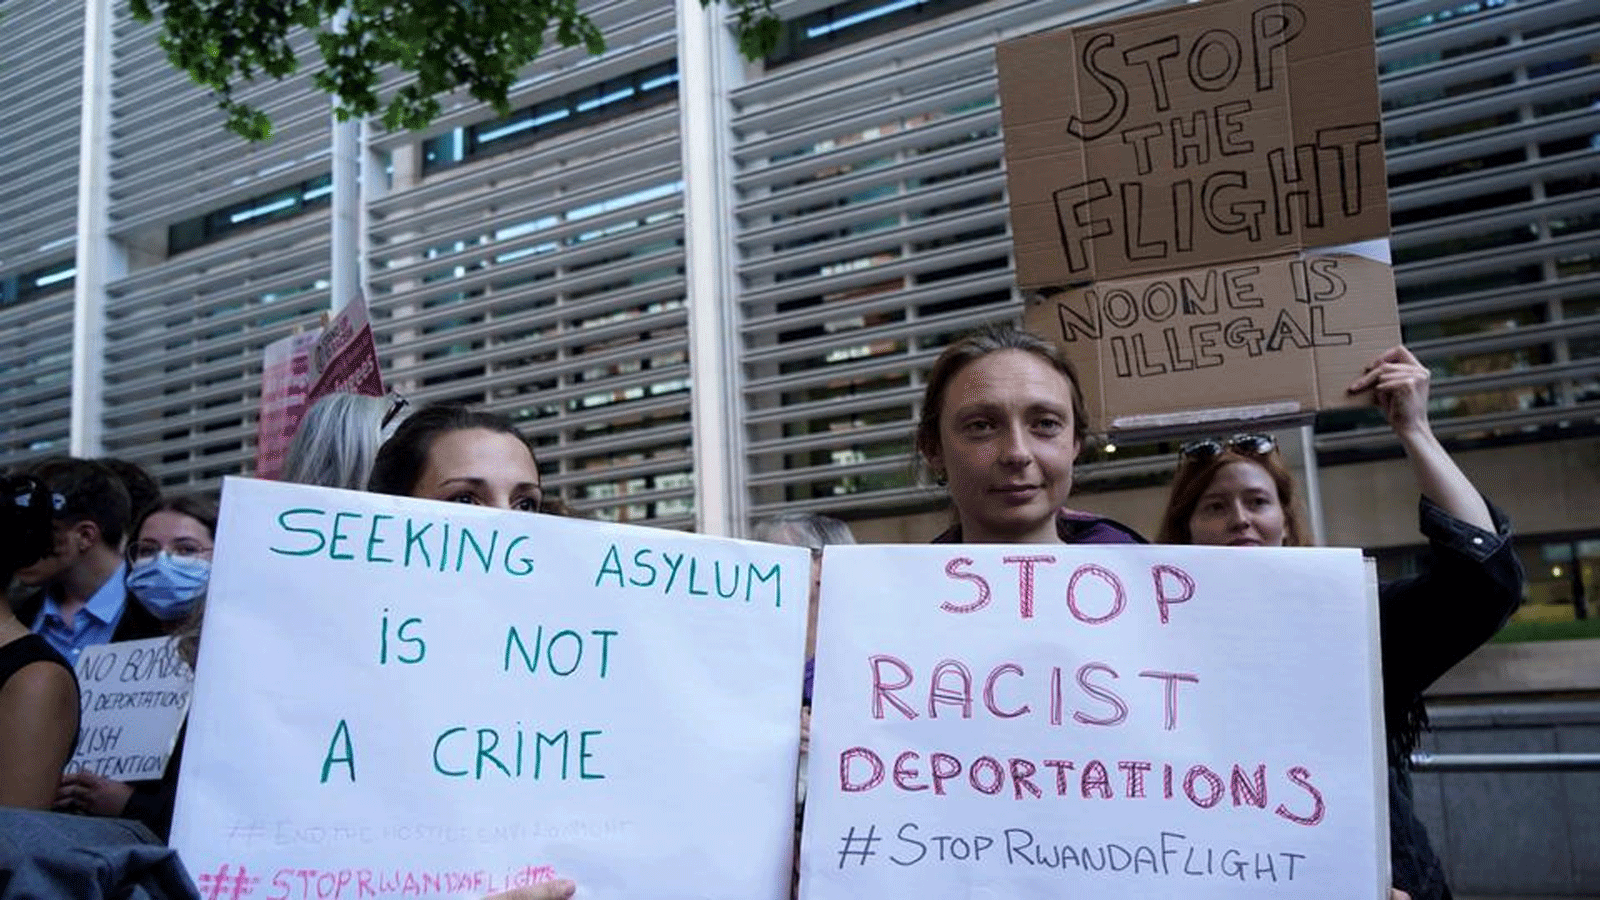 متظاهرون يحملون لافتات أثناء تجمعهم خارج وزارة الداخلية في وسط لندن للتظاهر ضد خطة حكومة المملكة المتحدة لترحيل طالبي اللجوء إلى رواندا